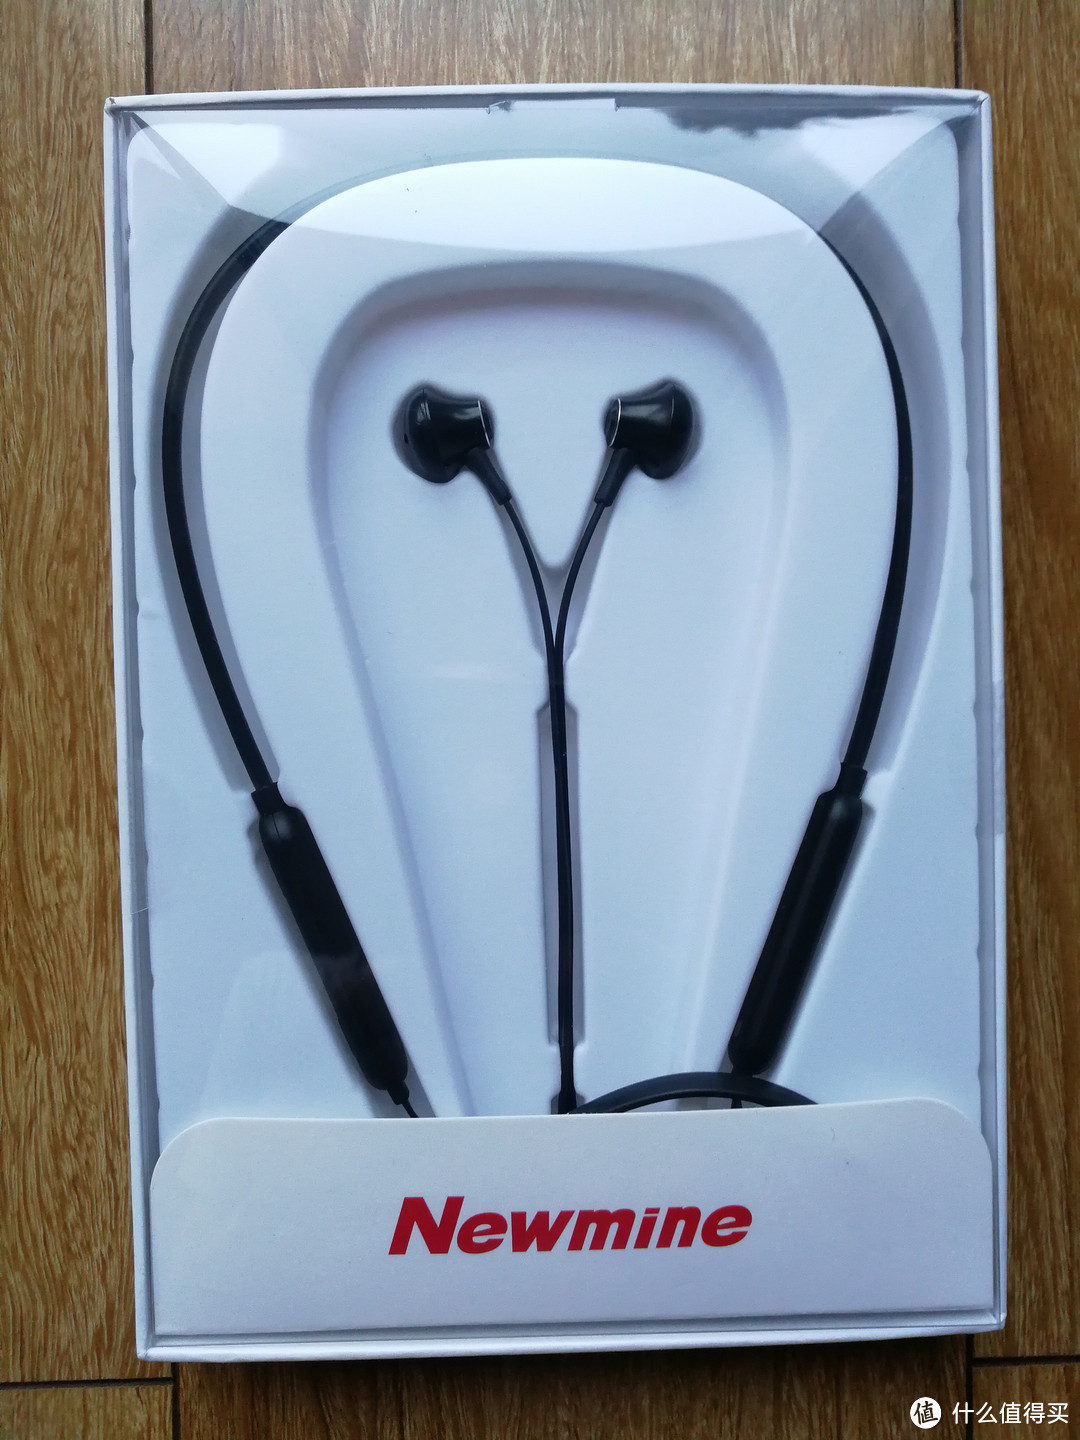 低价产品能买吗？纽曼 Newmine C6 颈挂式蓝牙耳机晒单